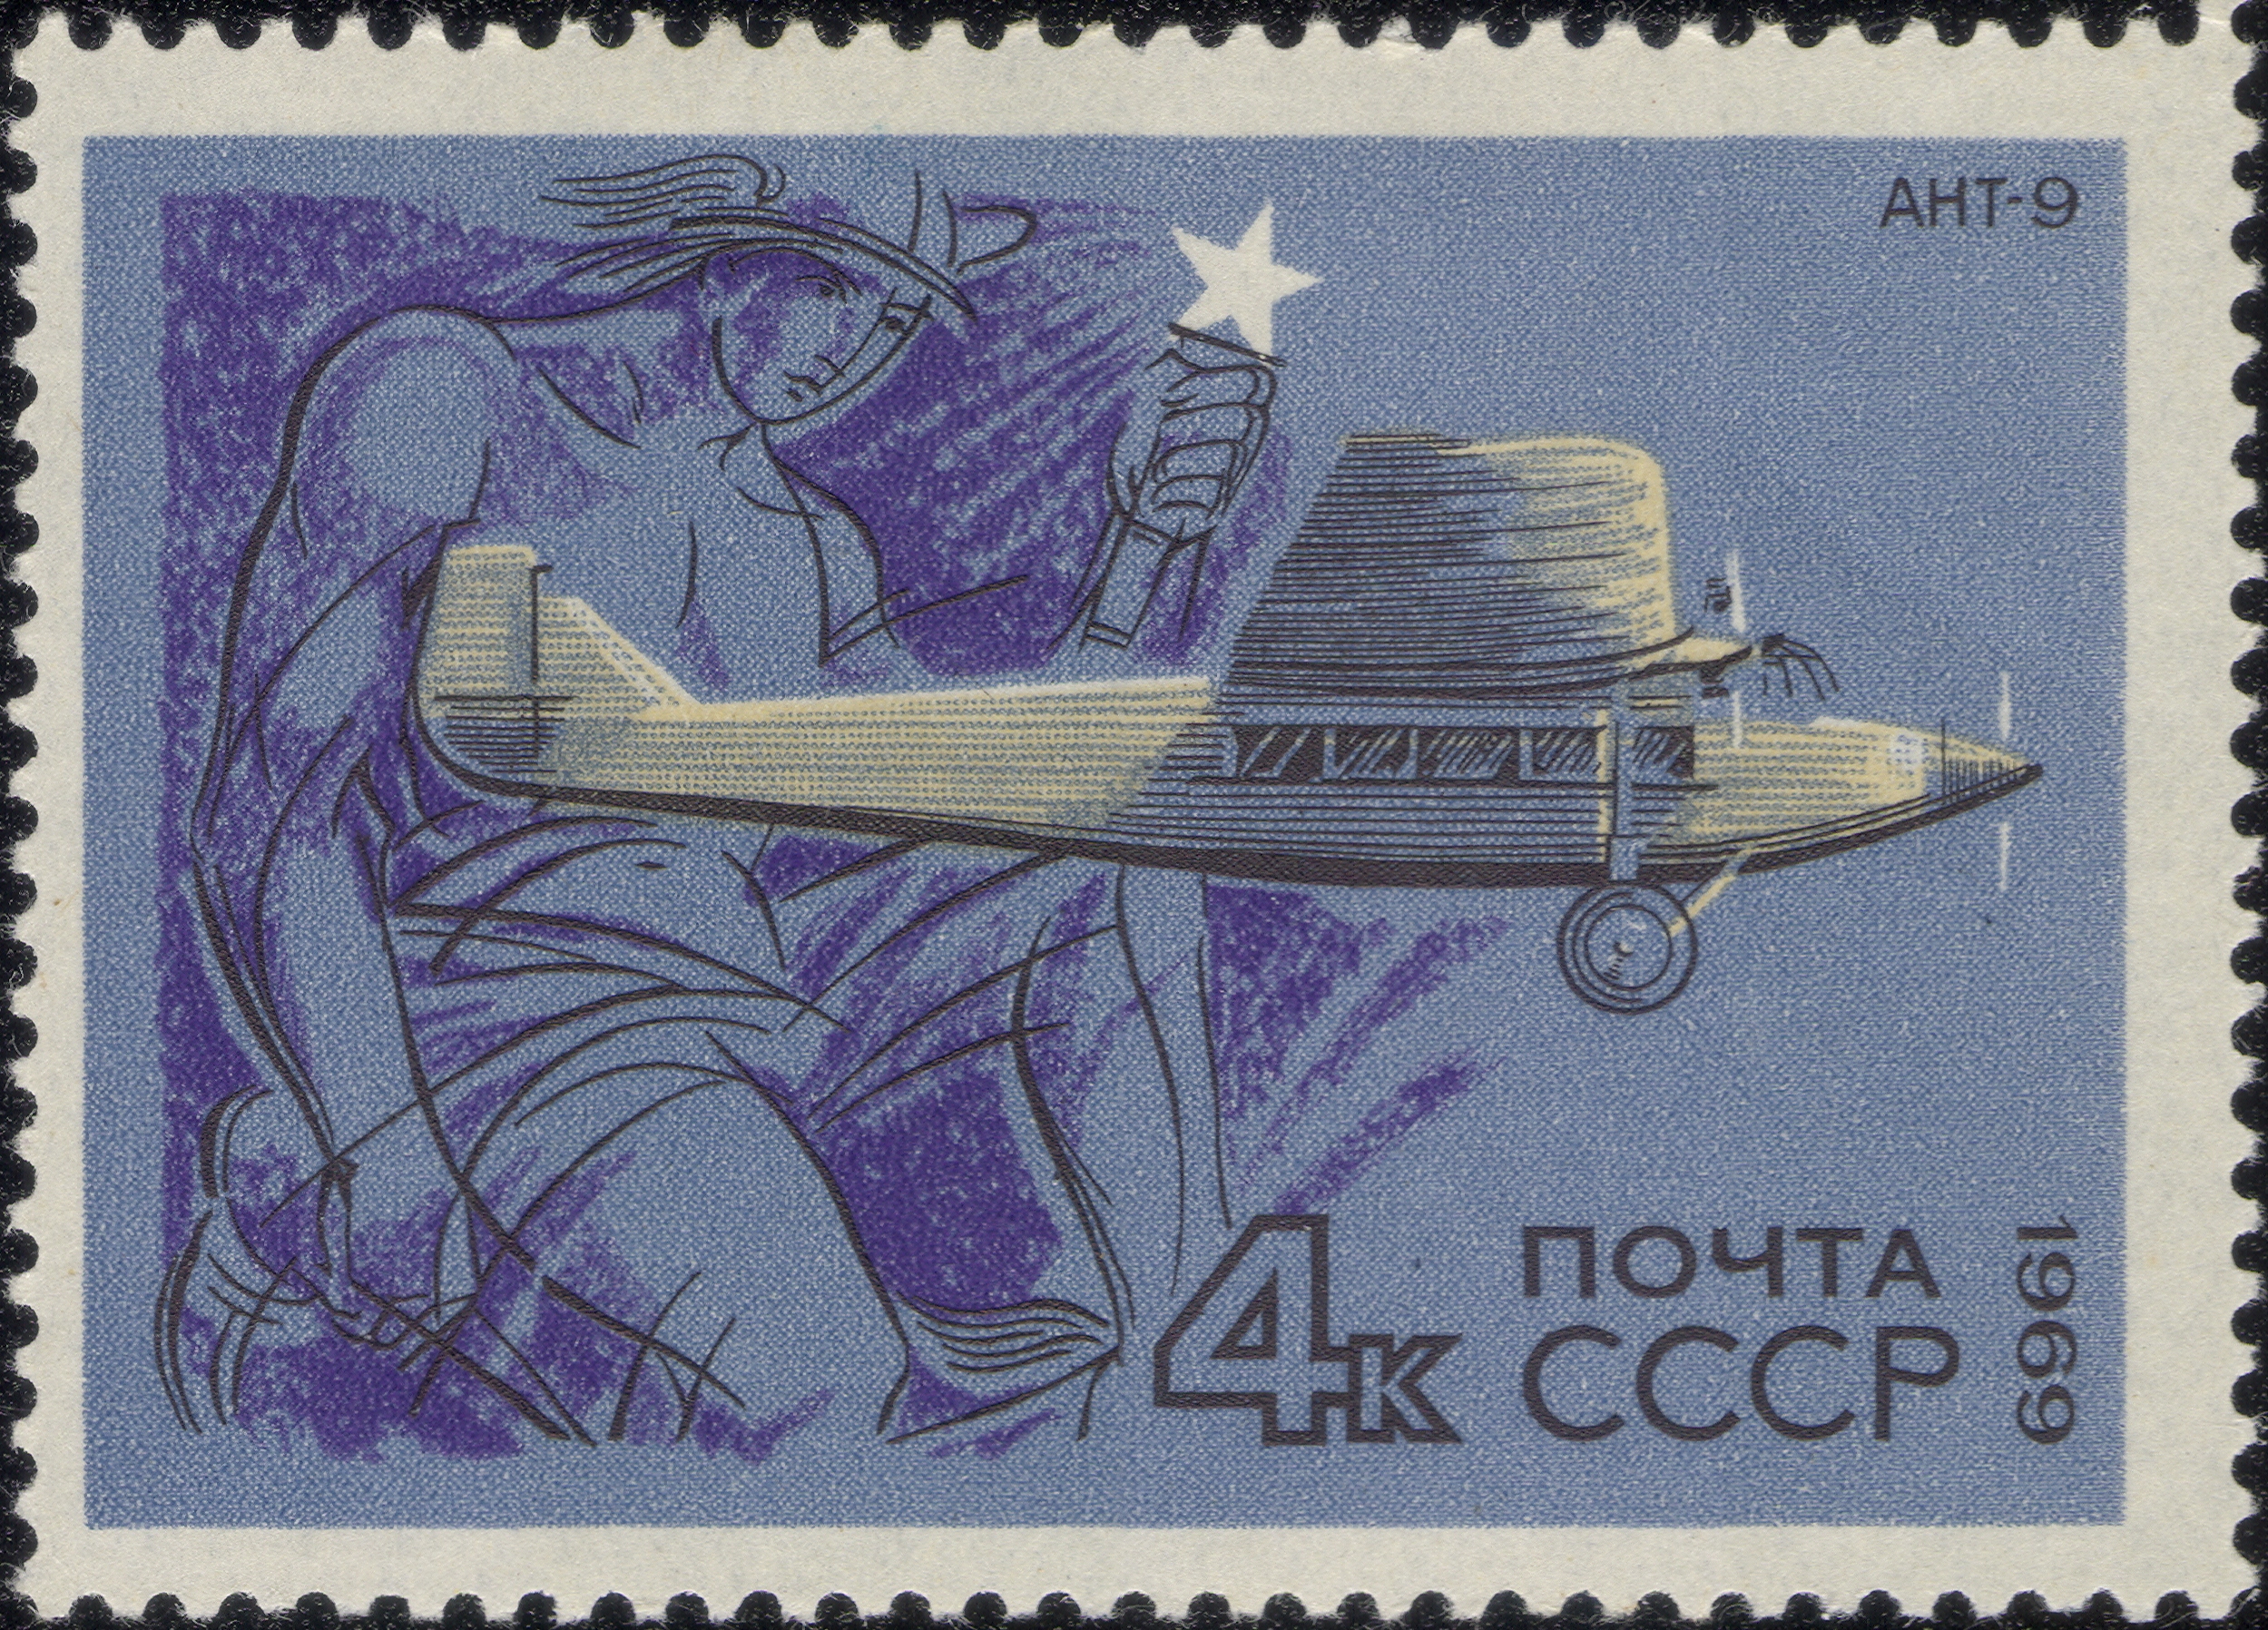 Марки СССР - 1969 - 4 к - Ант-9